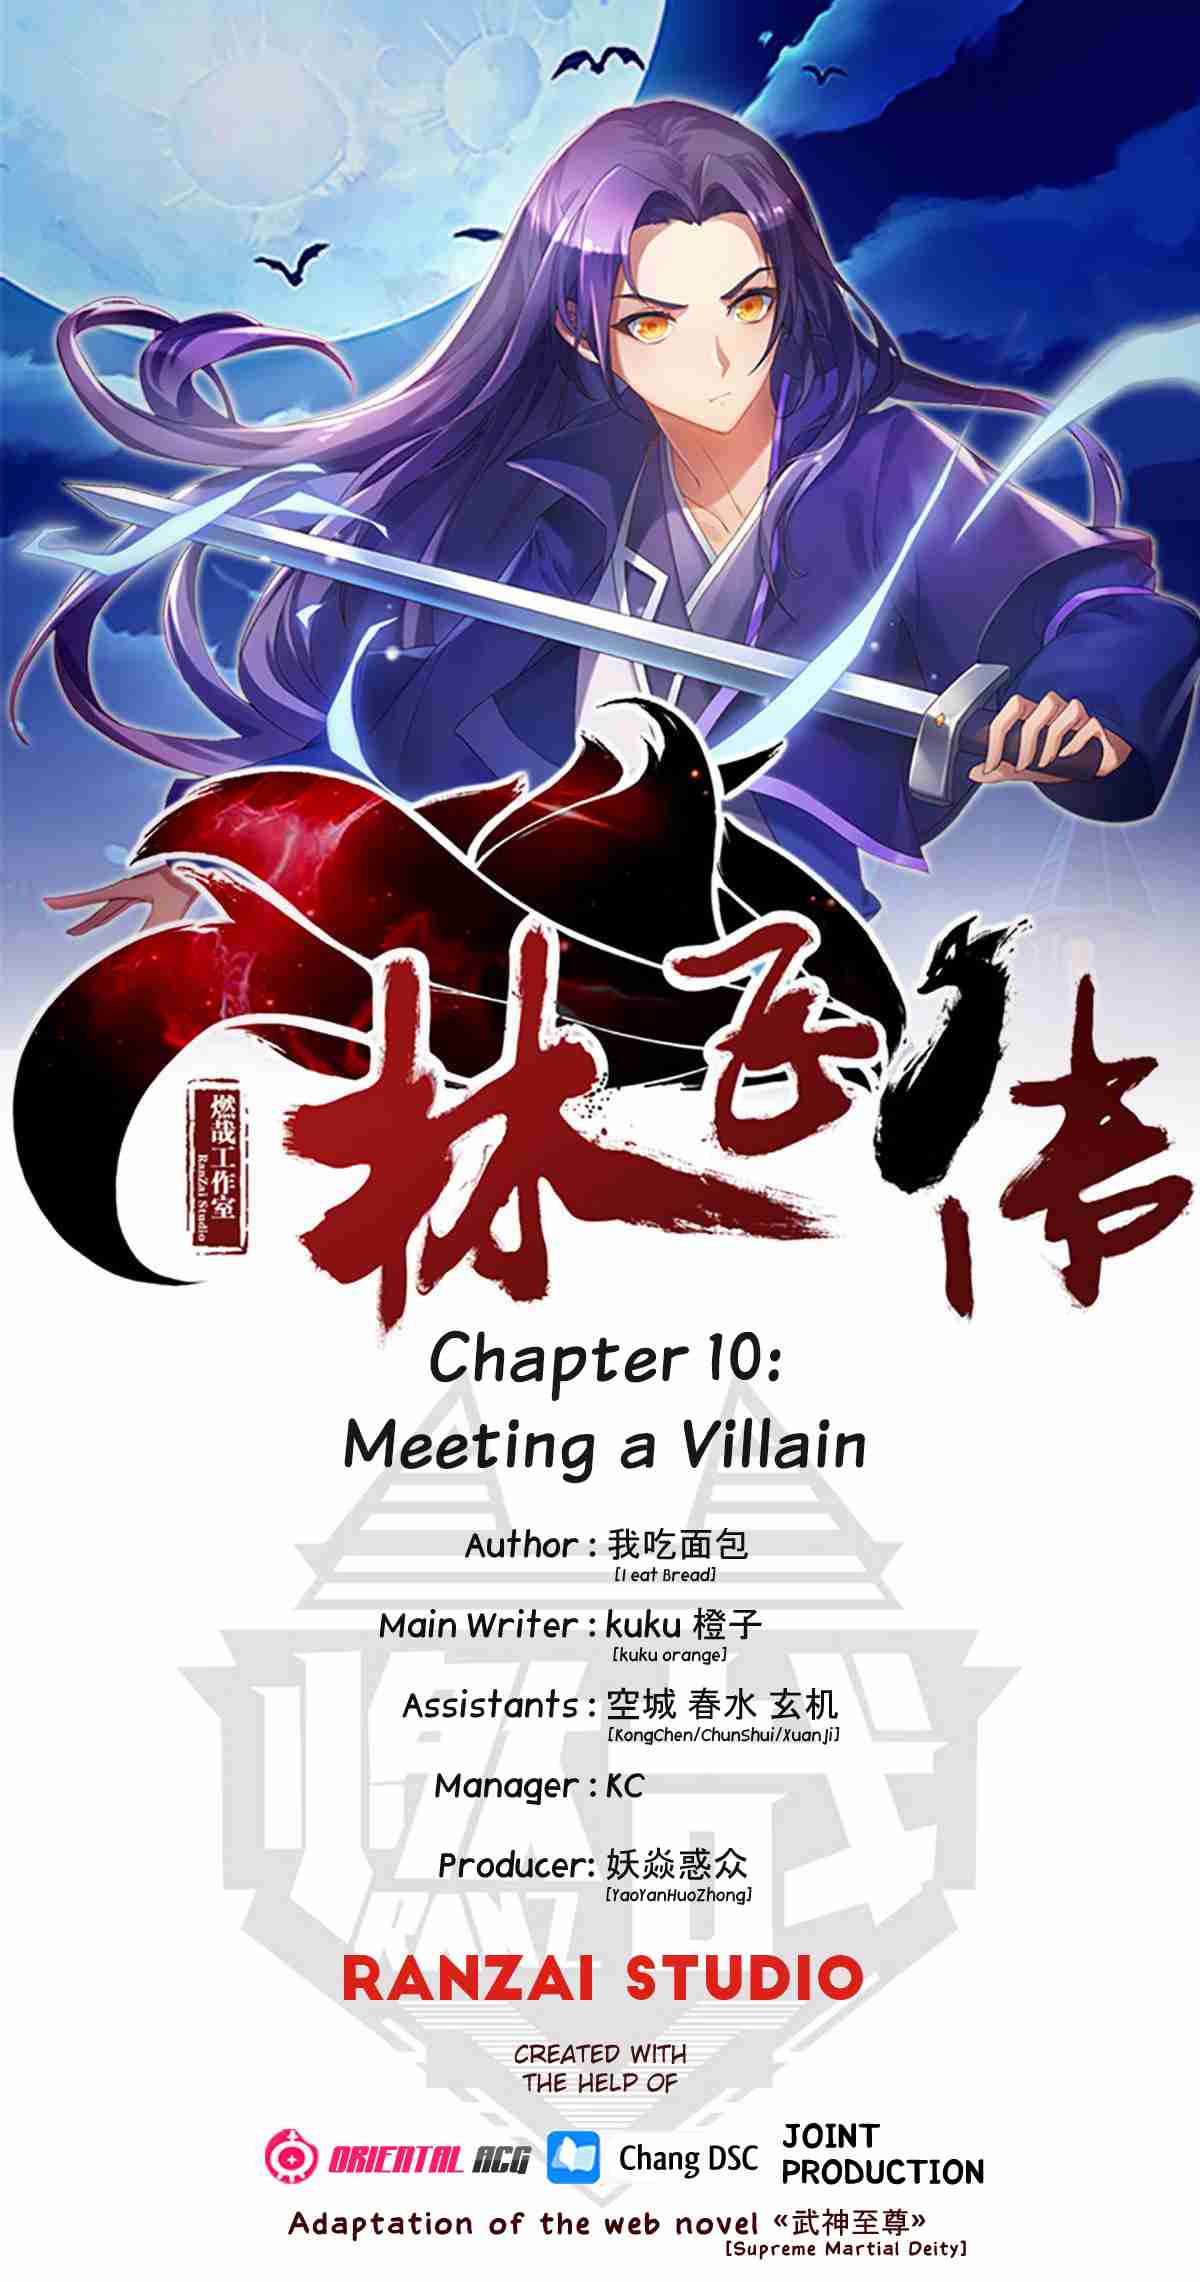 Lin Fei Chronicles Ch. 10 Meeting a Villain